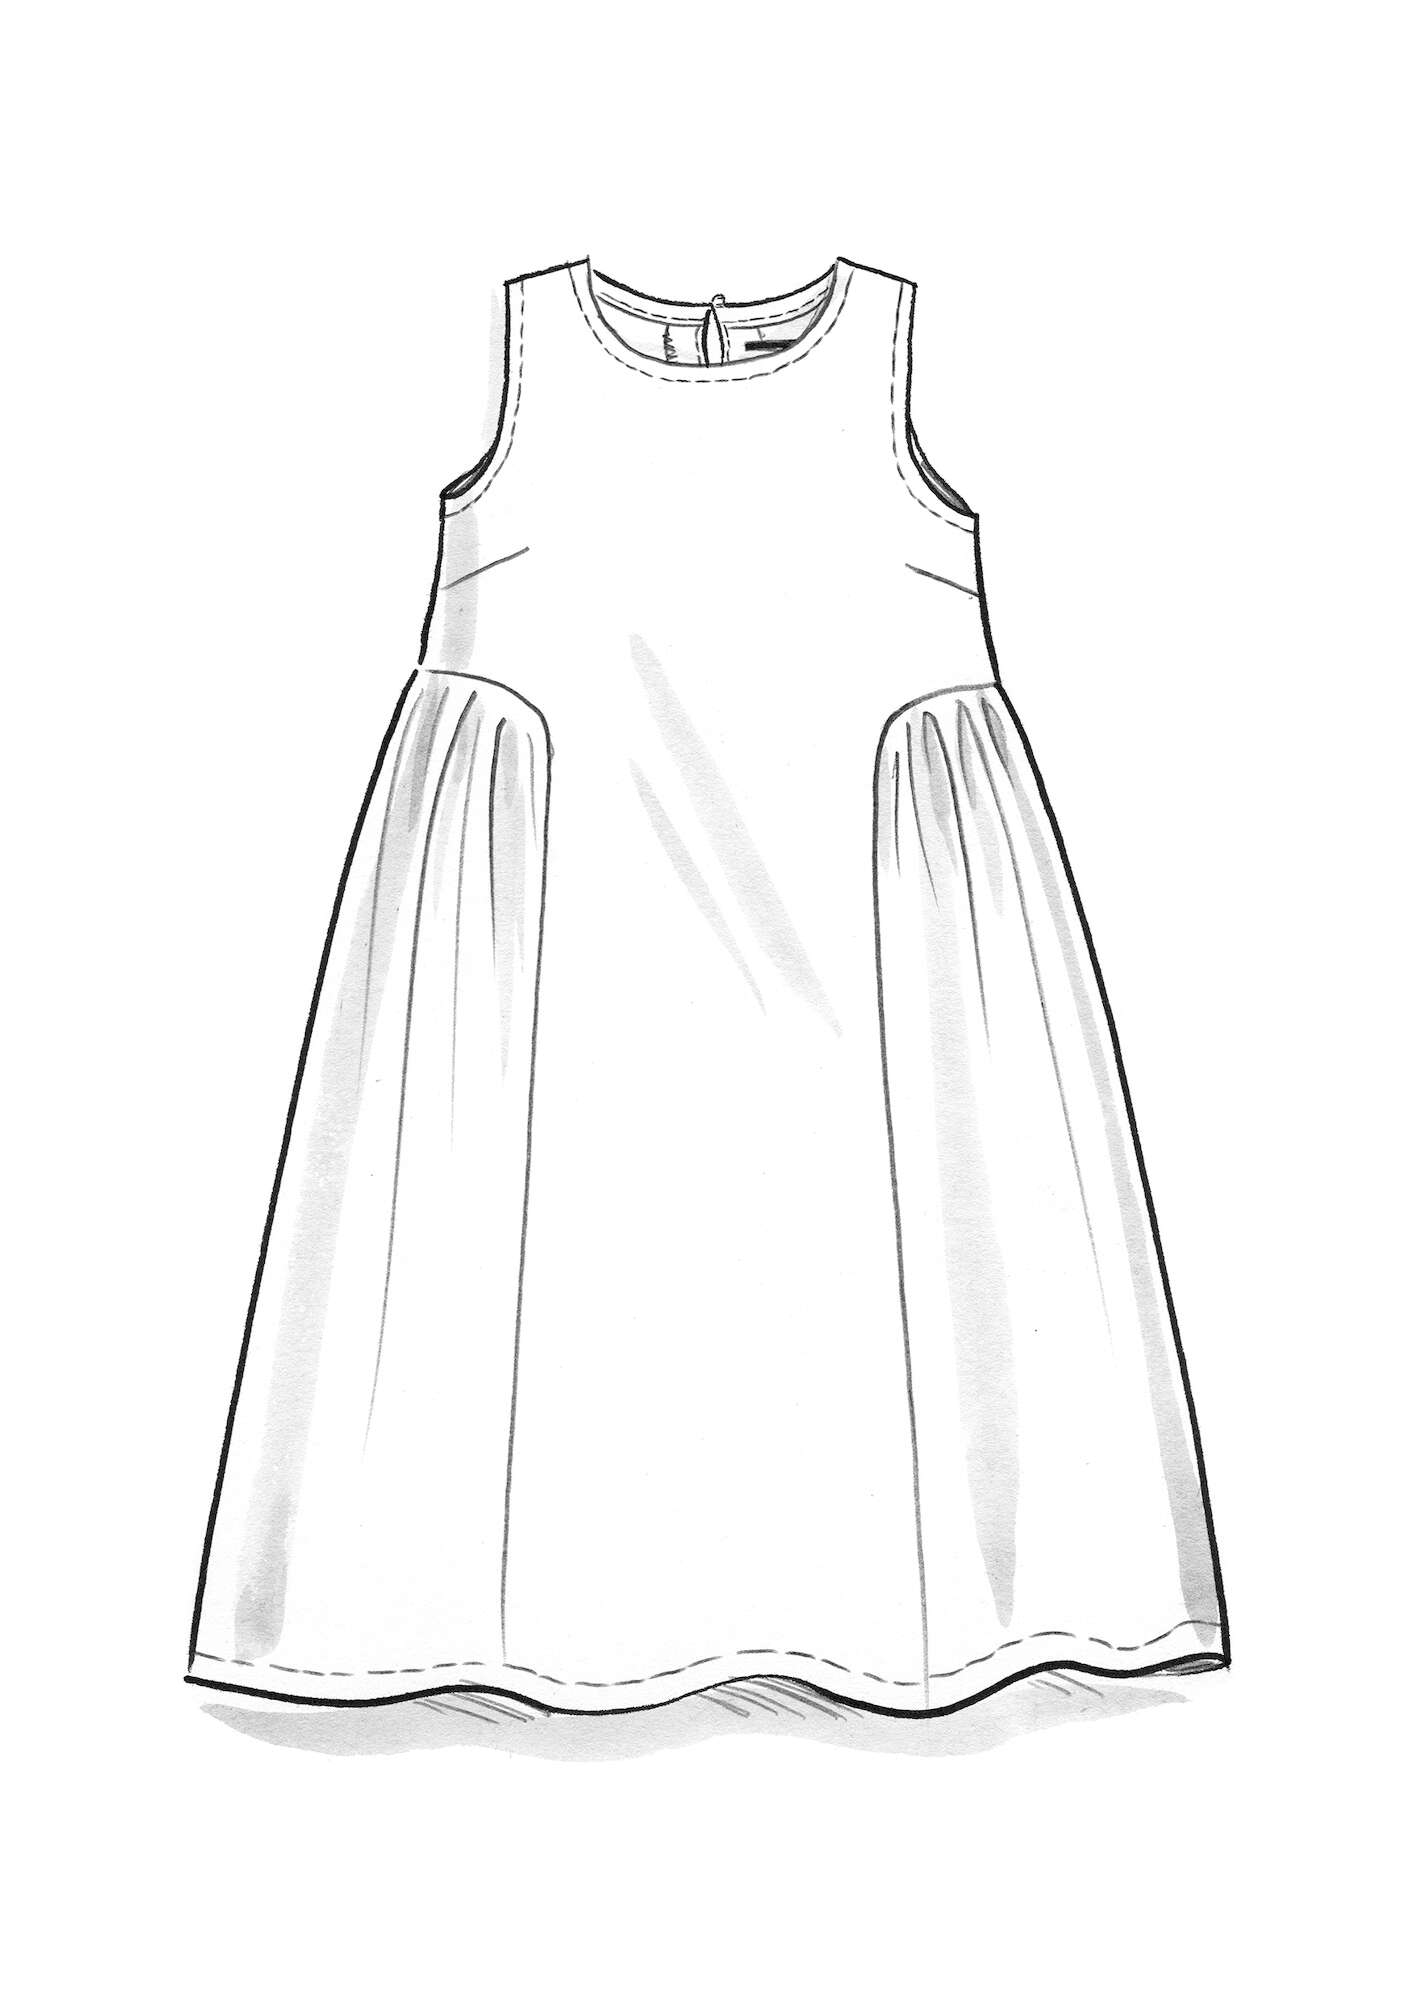 Woven linen dress cerise